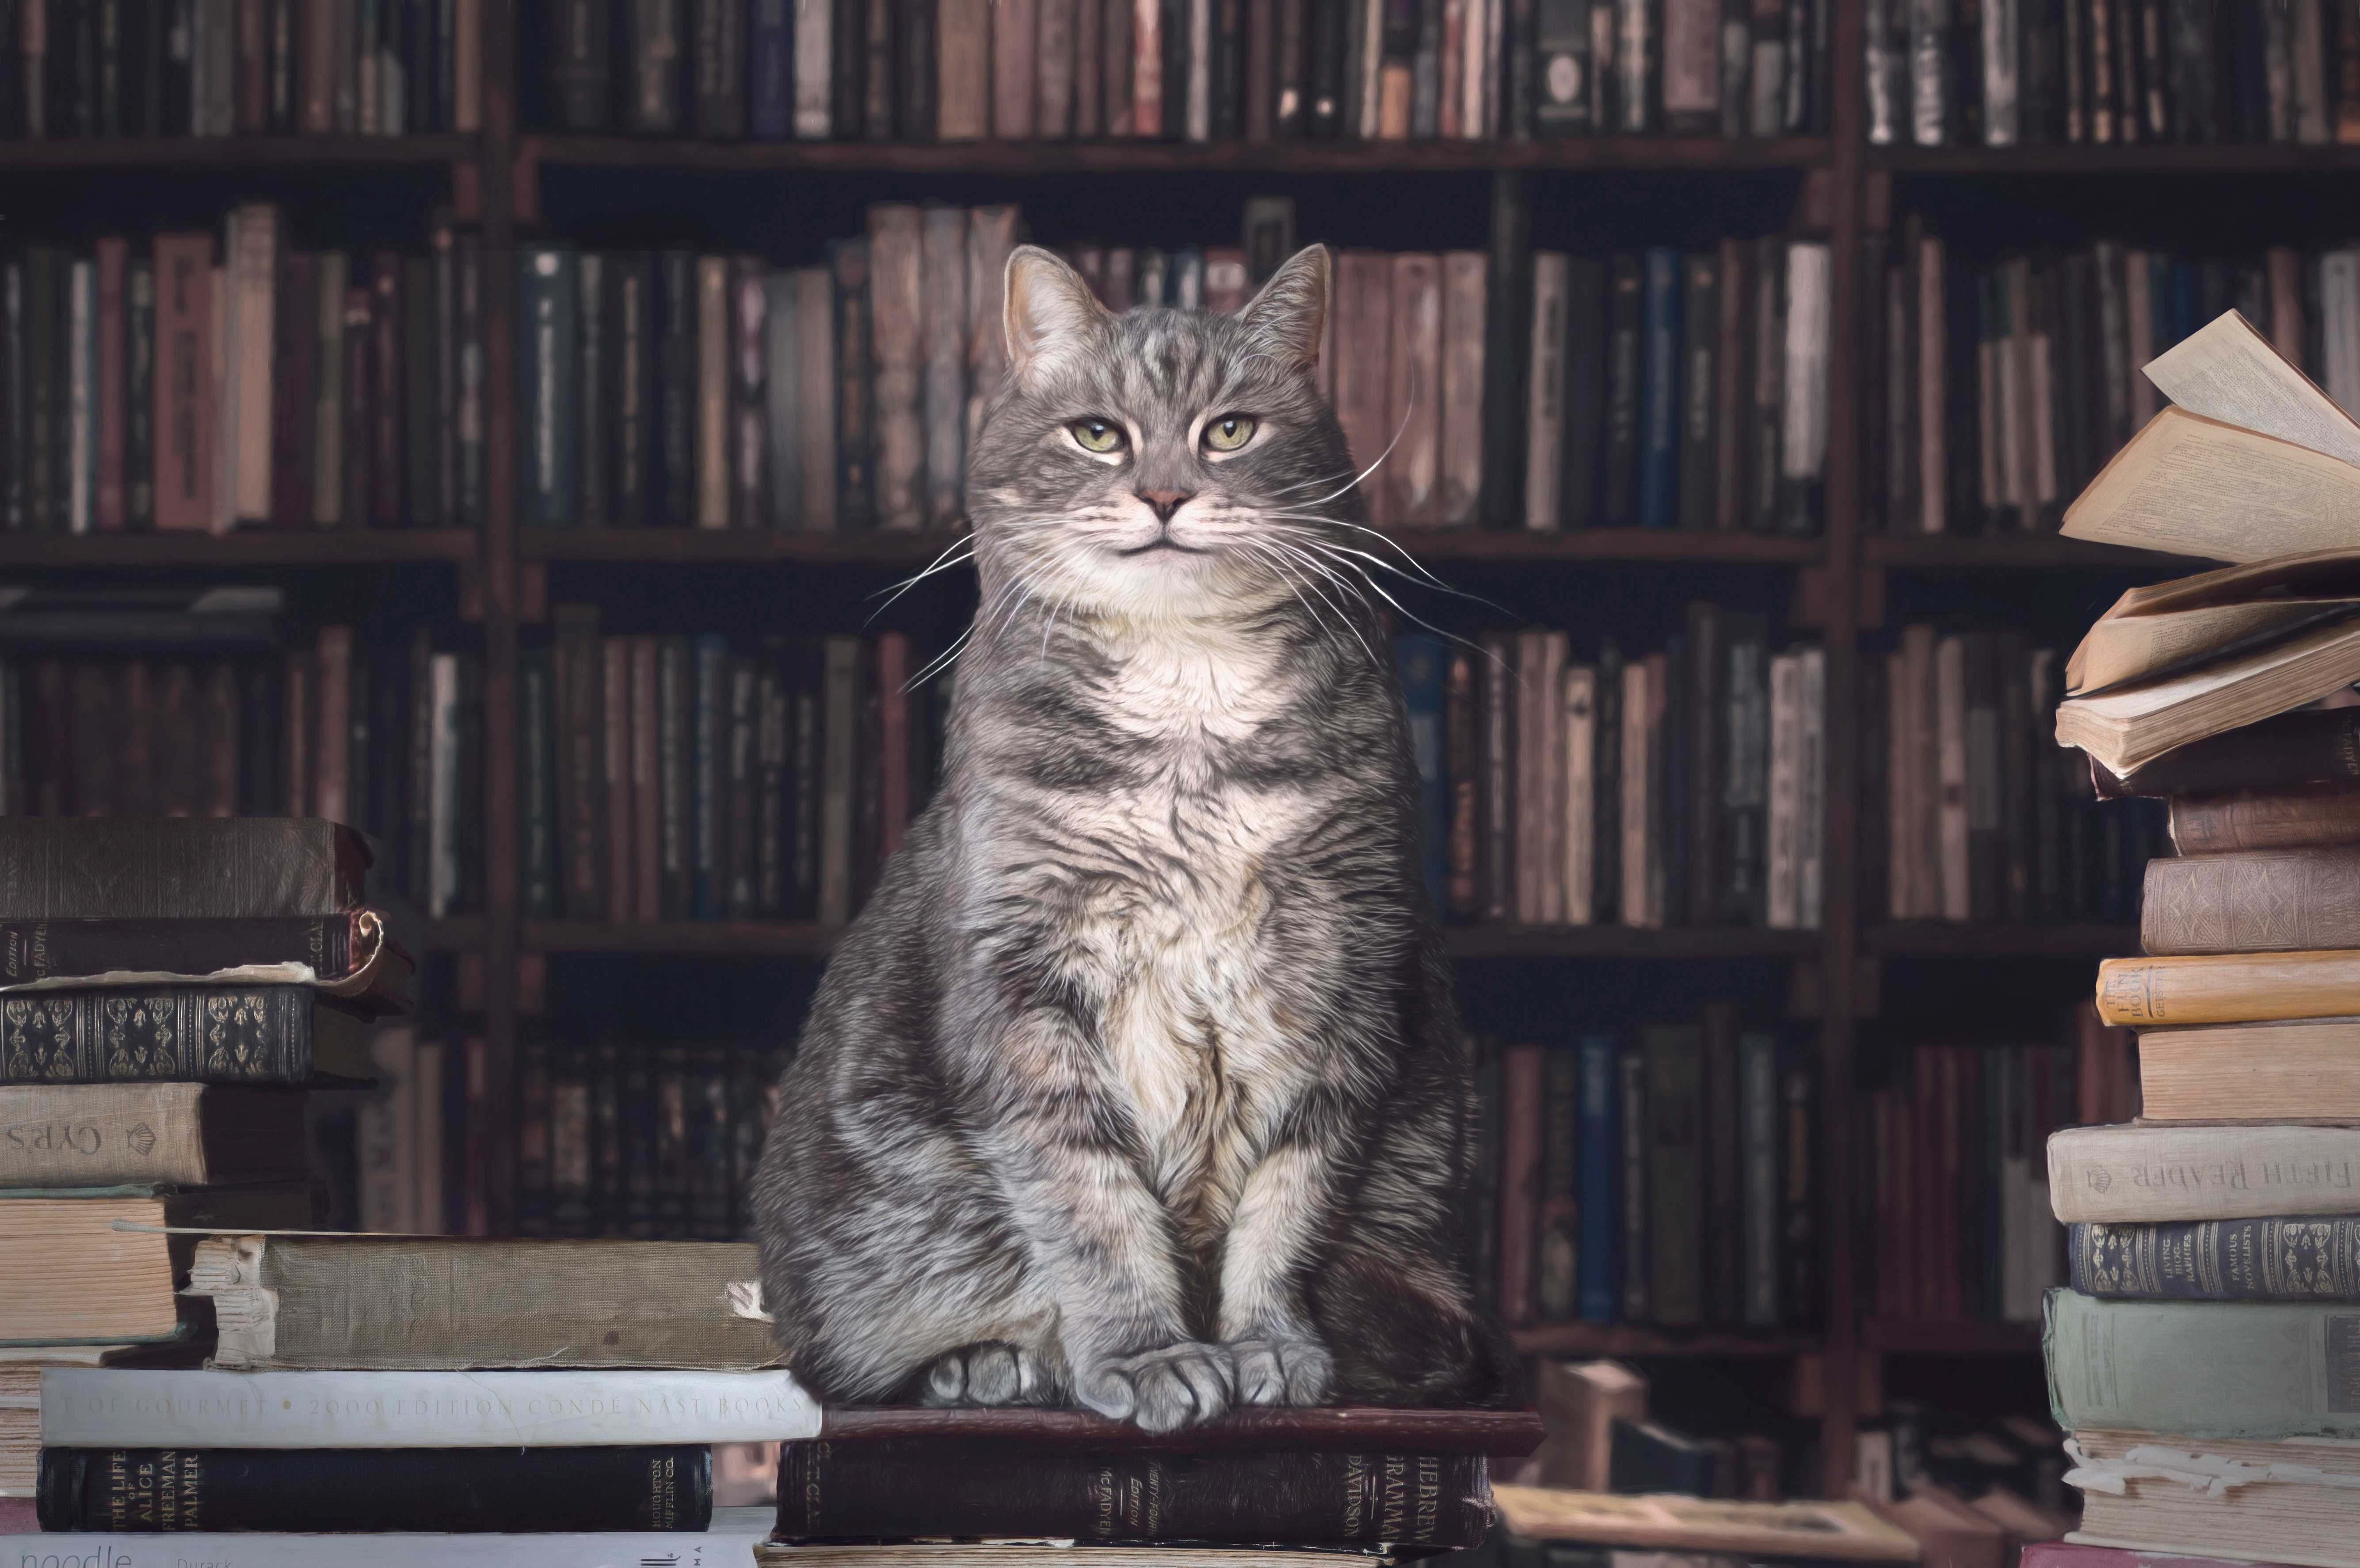 Descarga gratuita de fondo de pantalla para móvil de Animales, Gatos, Gato, Libro, Librería.